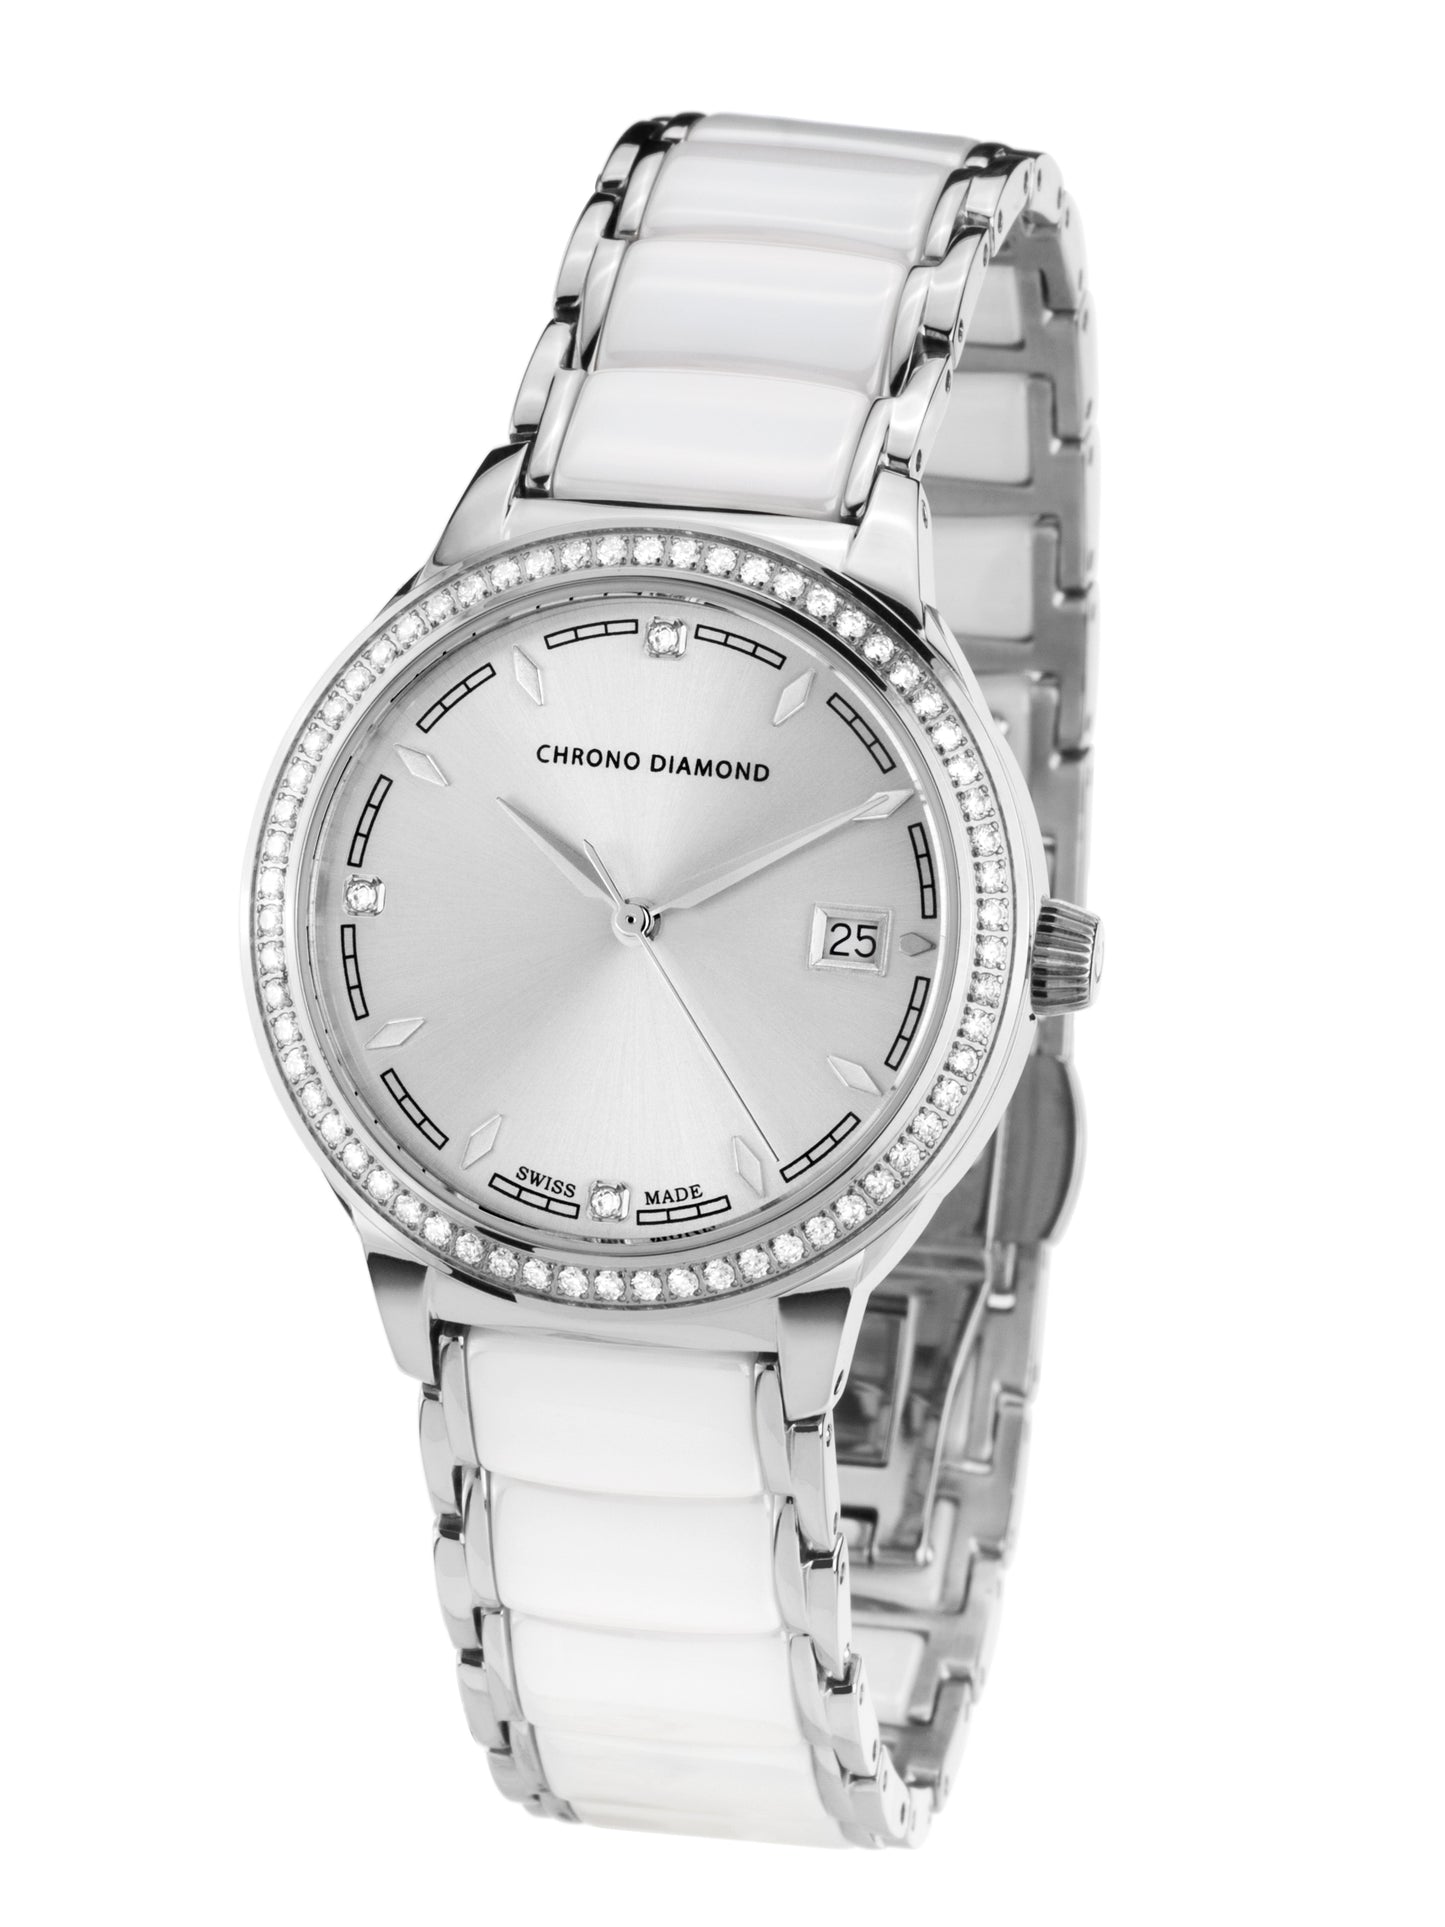 Automatic watches — Thyrsa — Chrono Diamond — steel ceramic white